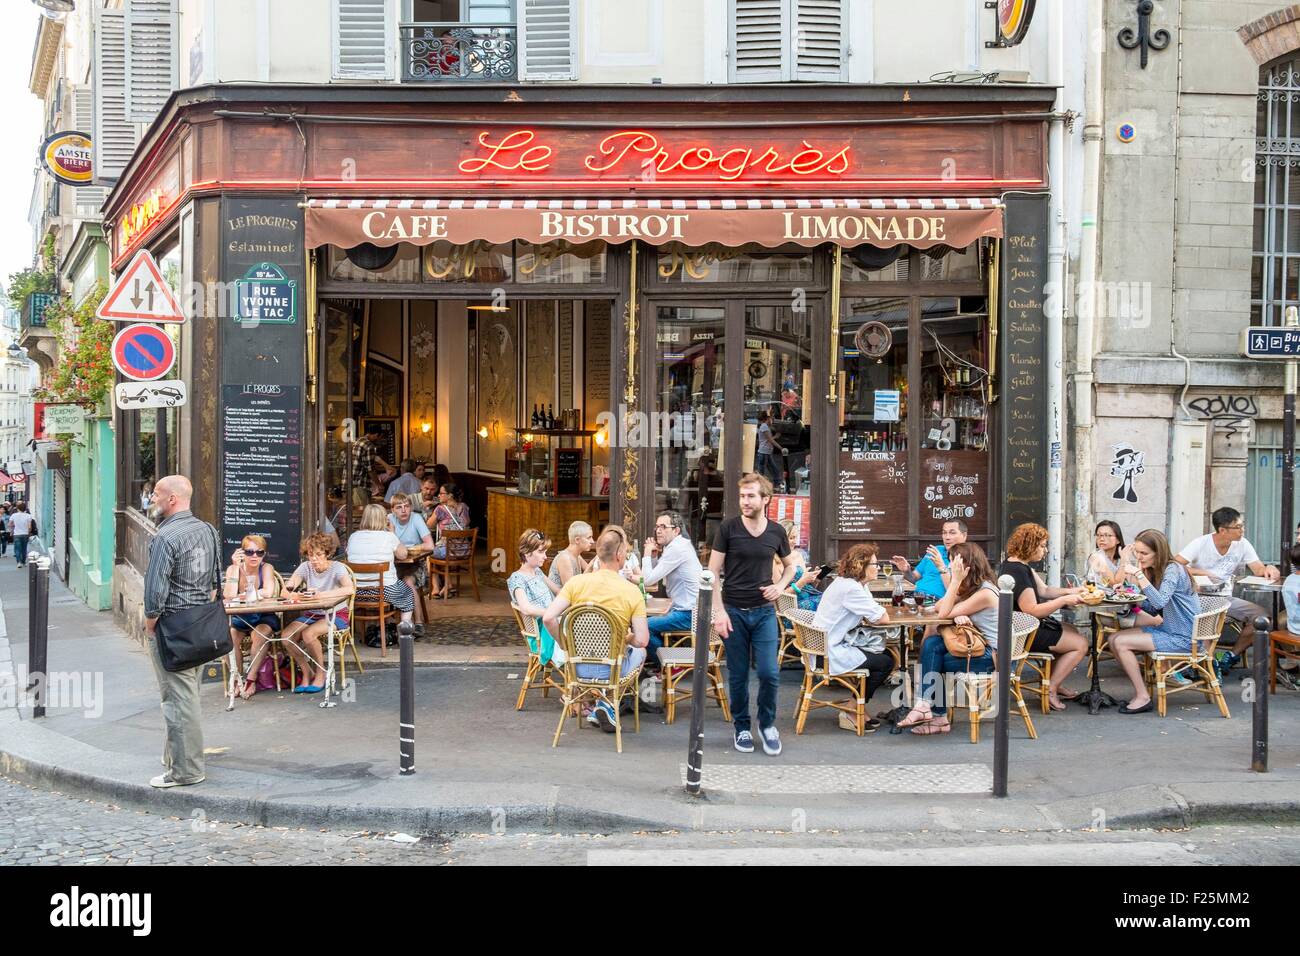 France, Paris, Montmartre district, the cafe Le Progres Stock Photo - Alamy